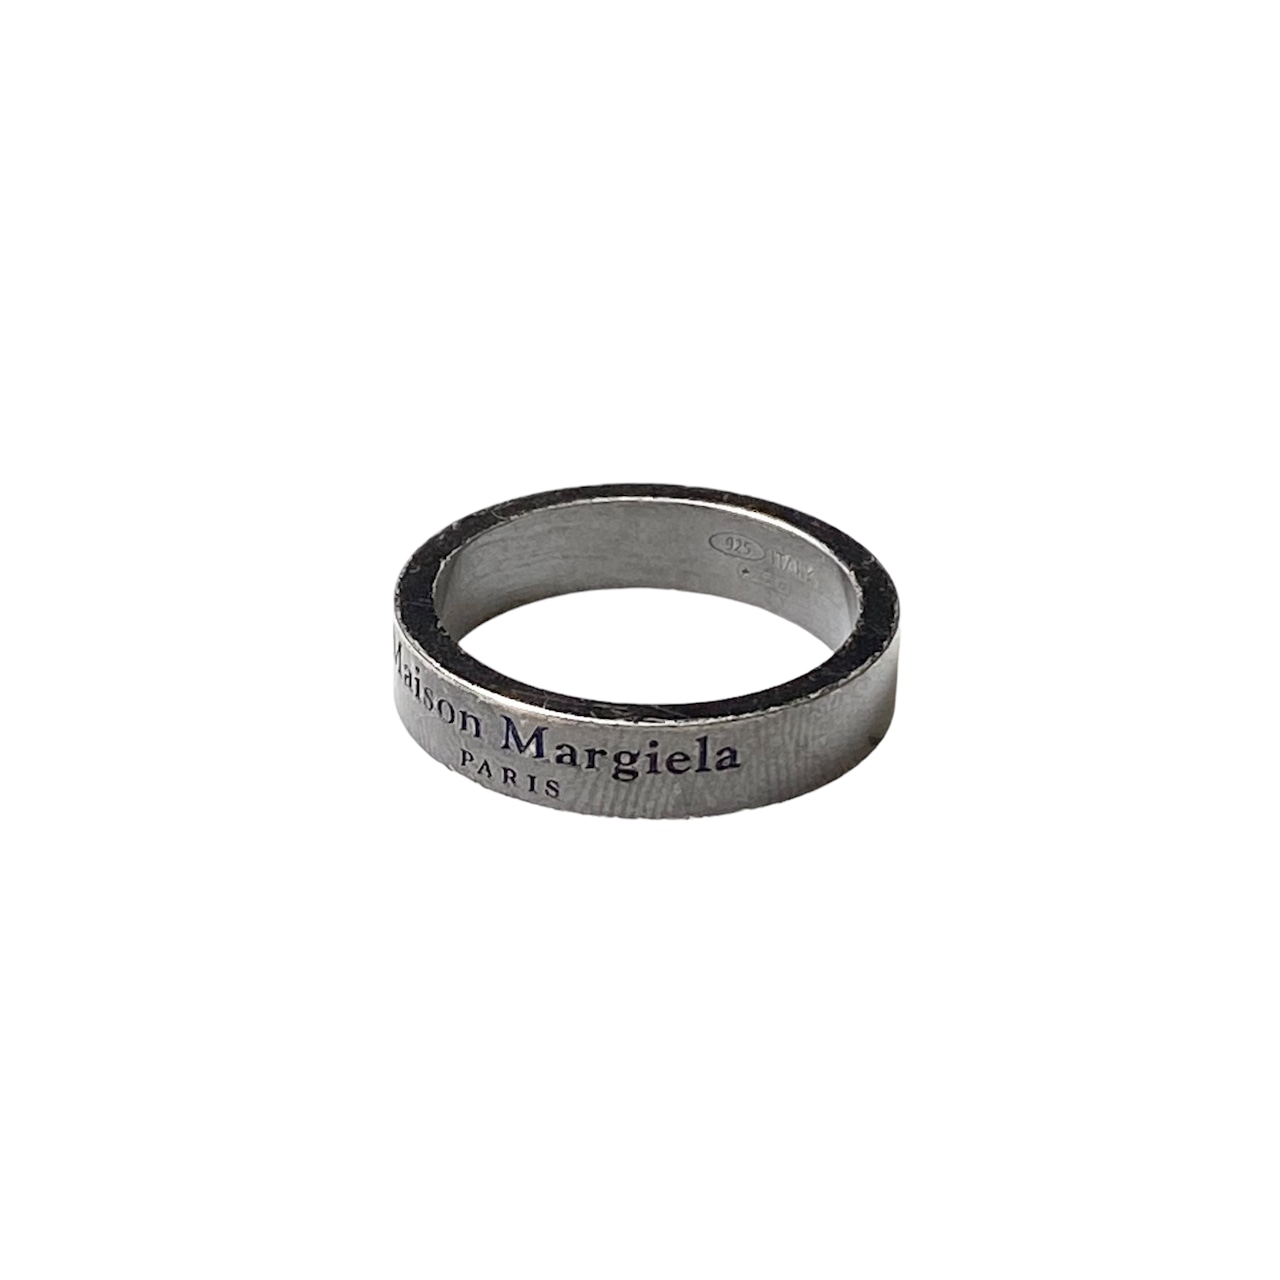 MAISON MARGIELA coating silver logo band ring